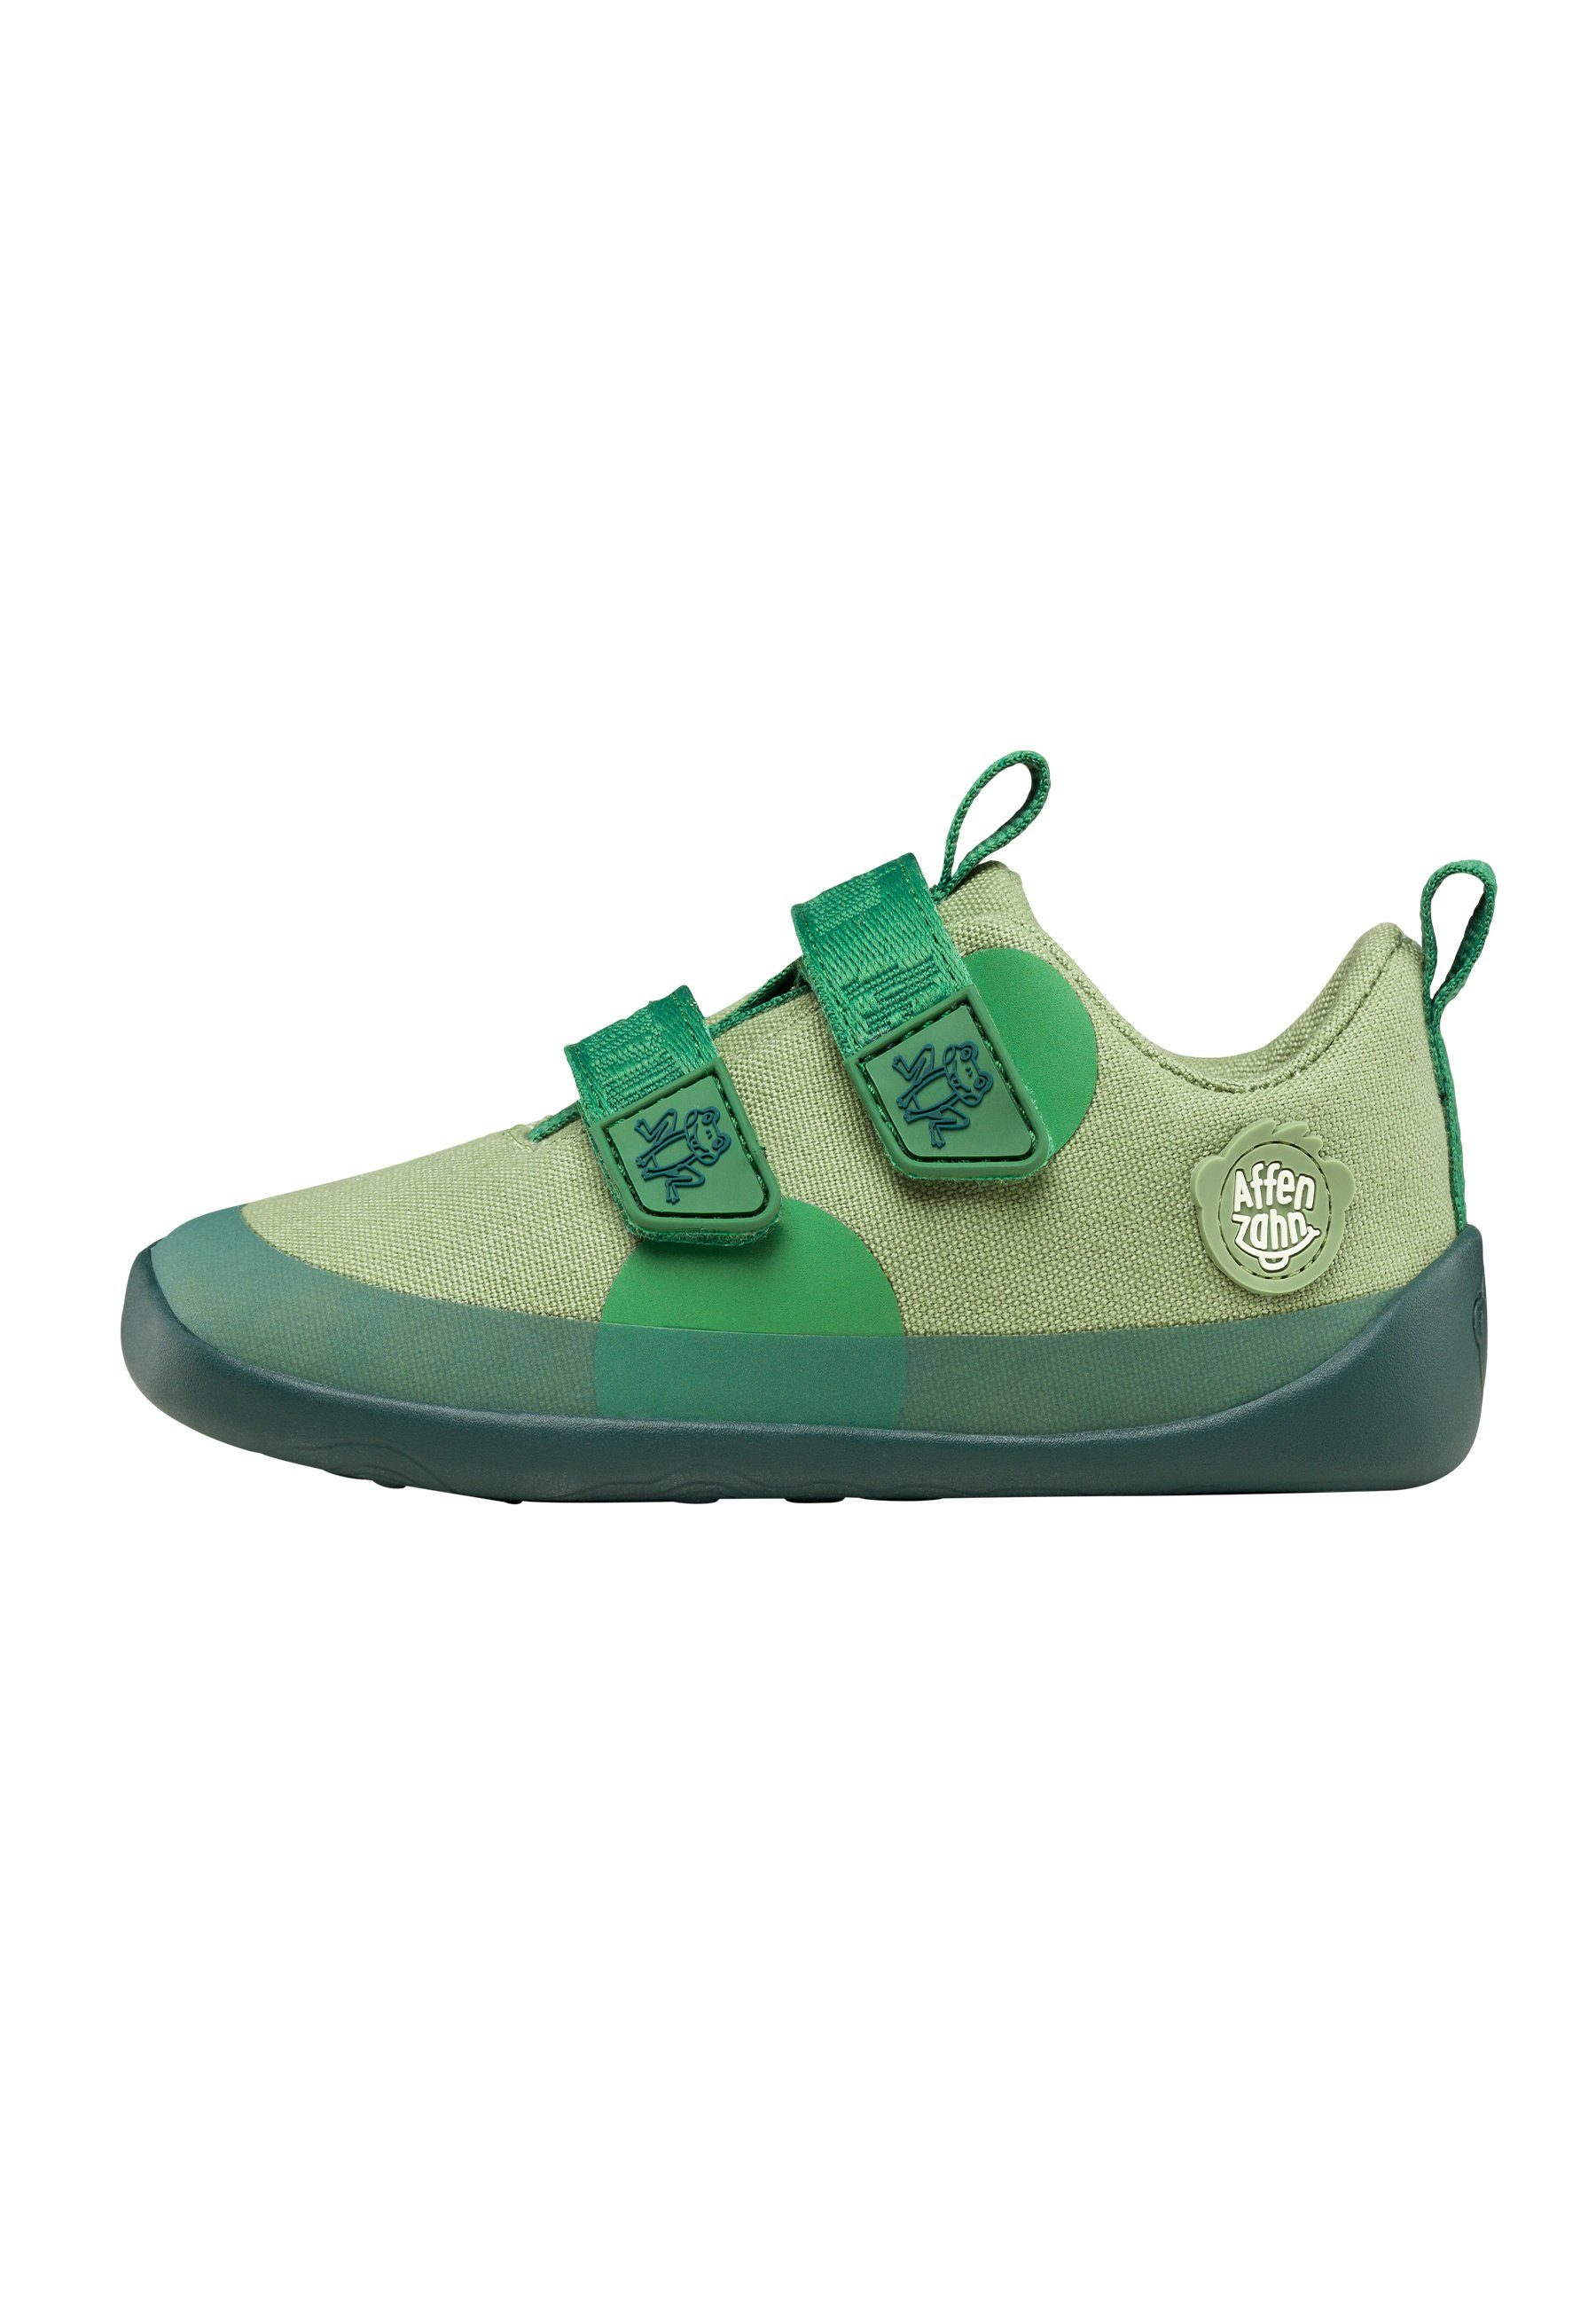 grün vegan BAUMWOLLE LUCKY FROSCH Affenzahn Frosch Sneaker